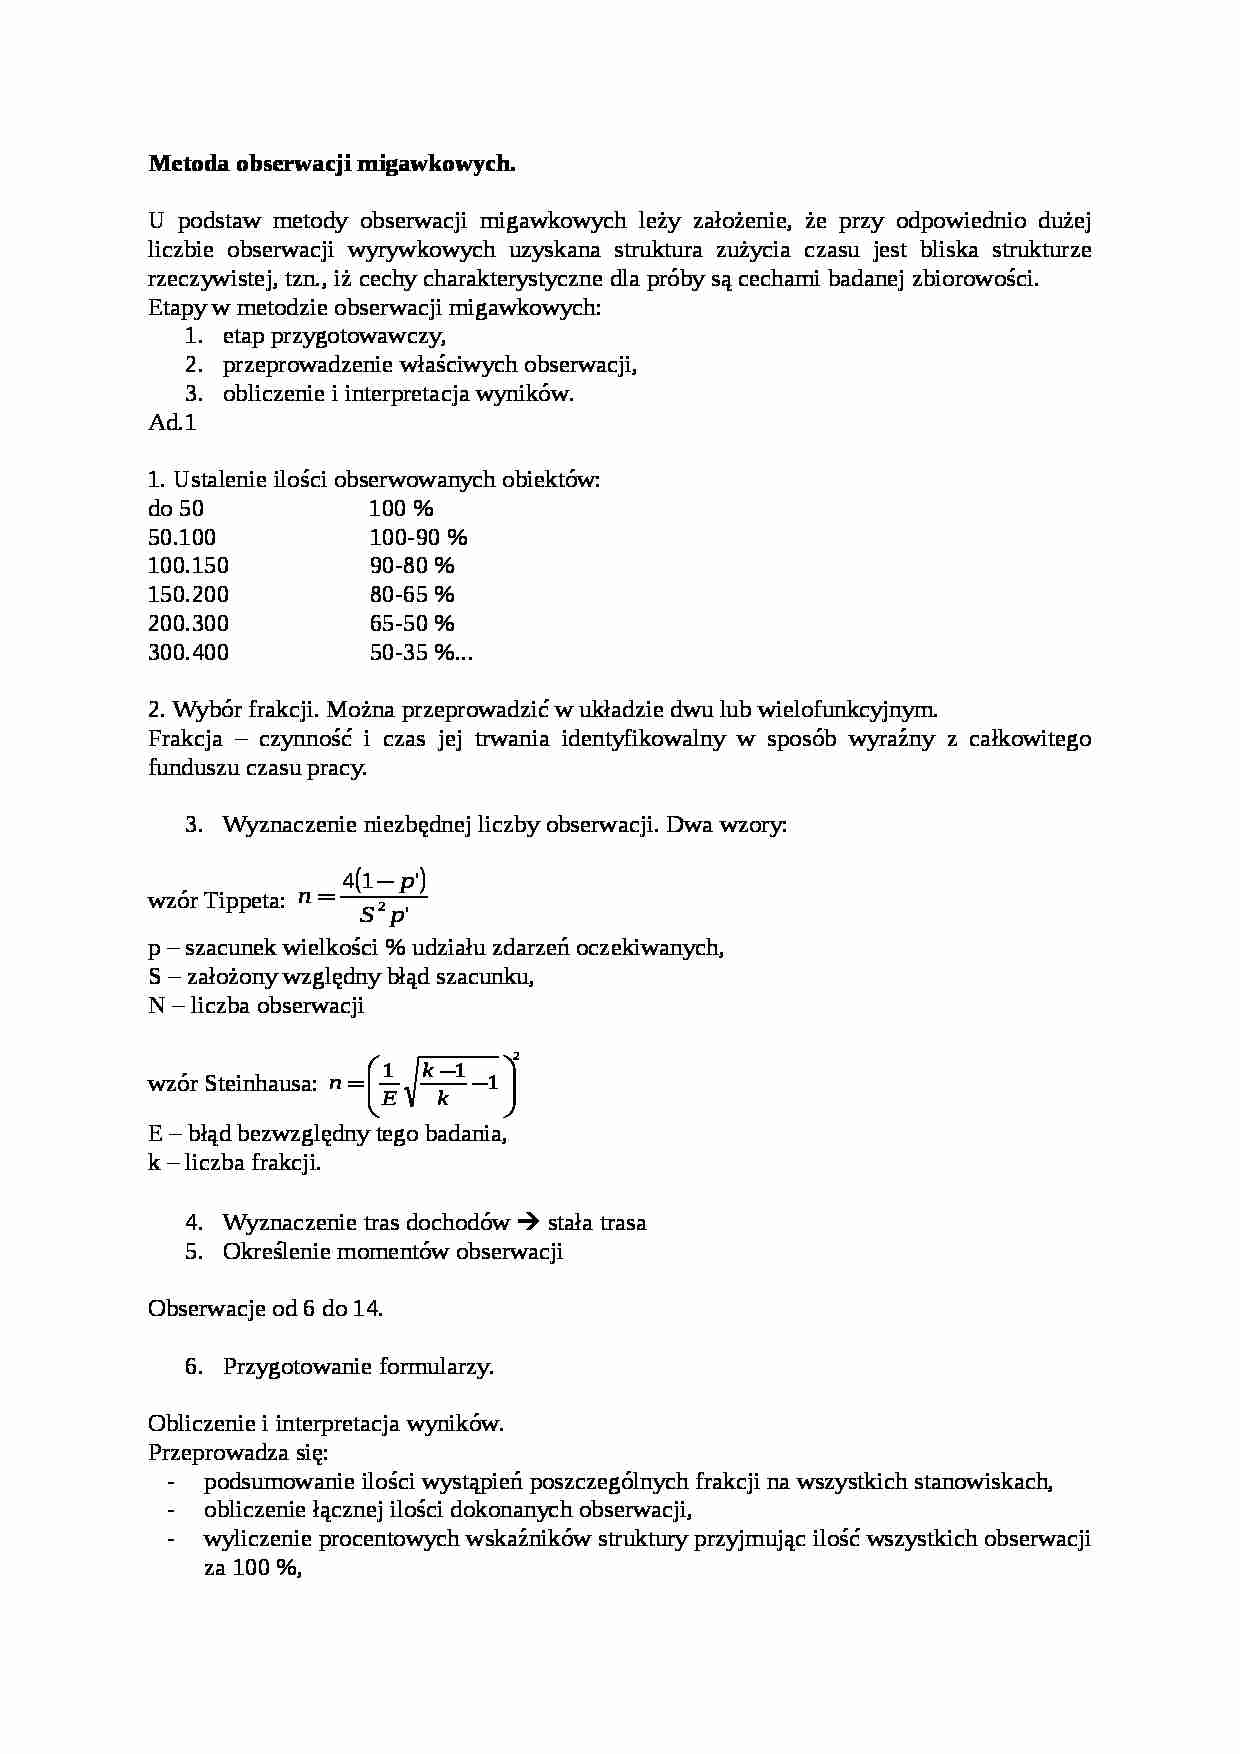 Metoda obserwacji migawkowych - wzór Steinhausa - strona 1